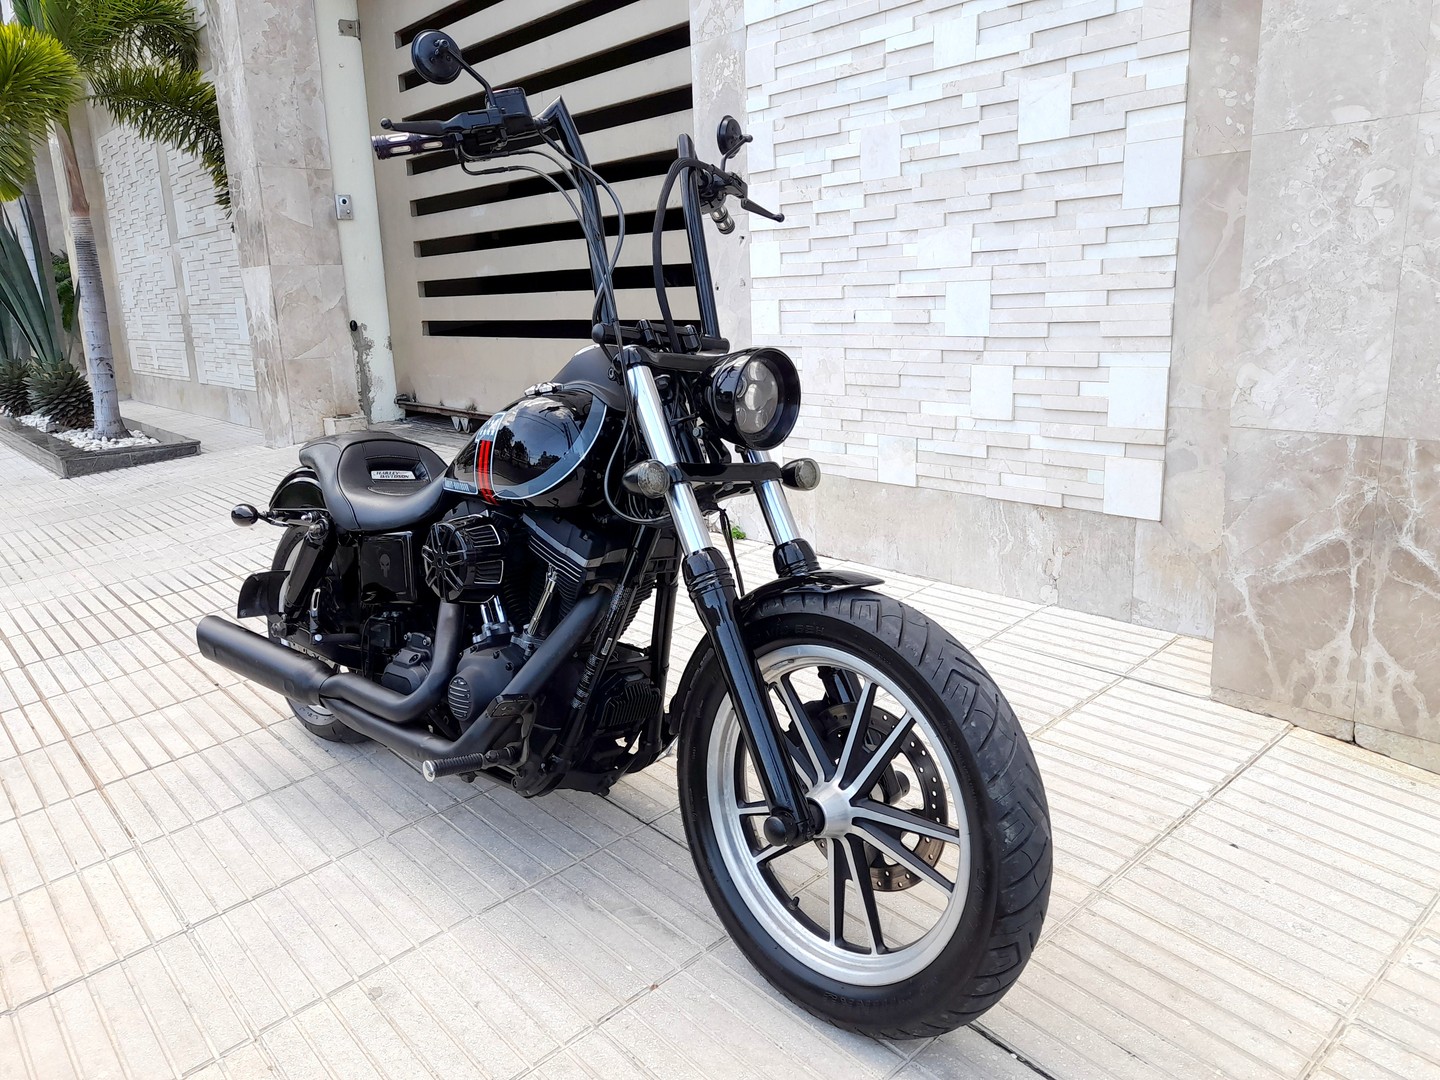 motores y pasolas - Harley Davidson Street Bob 2013 como nueva 0